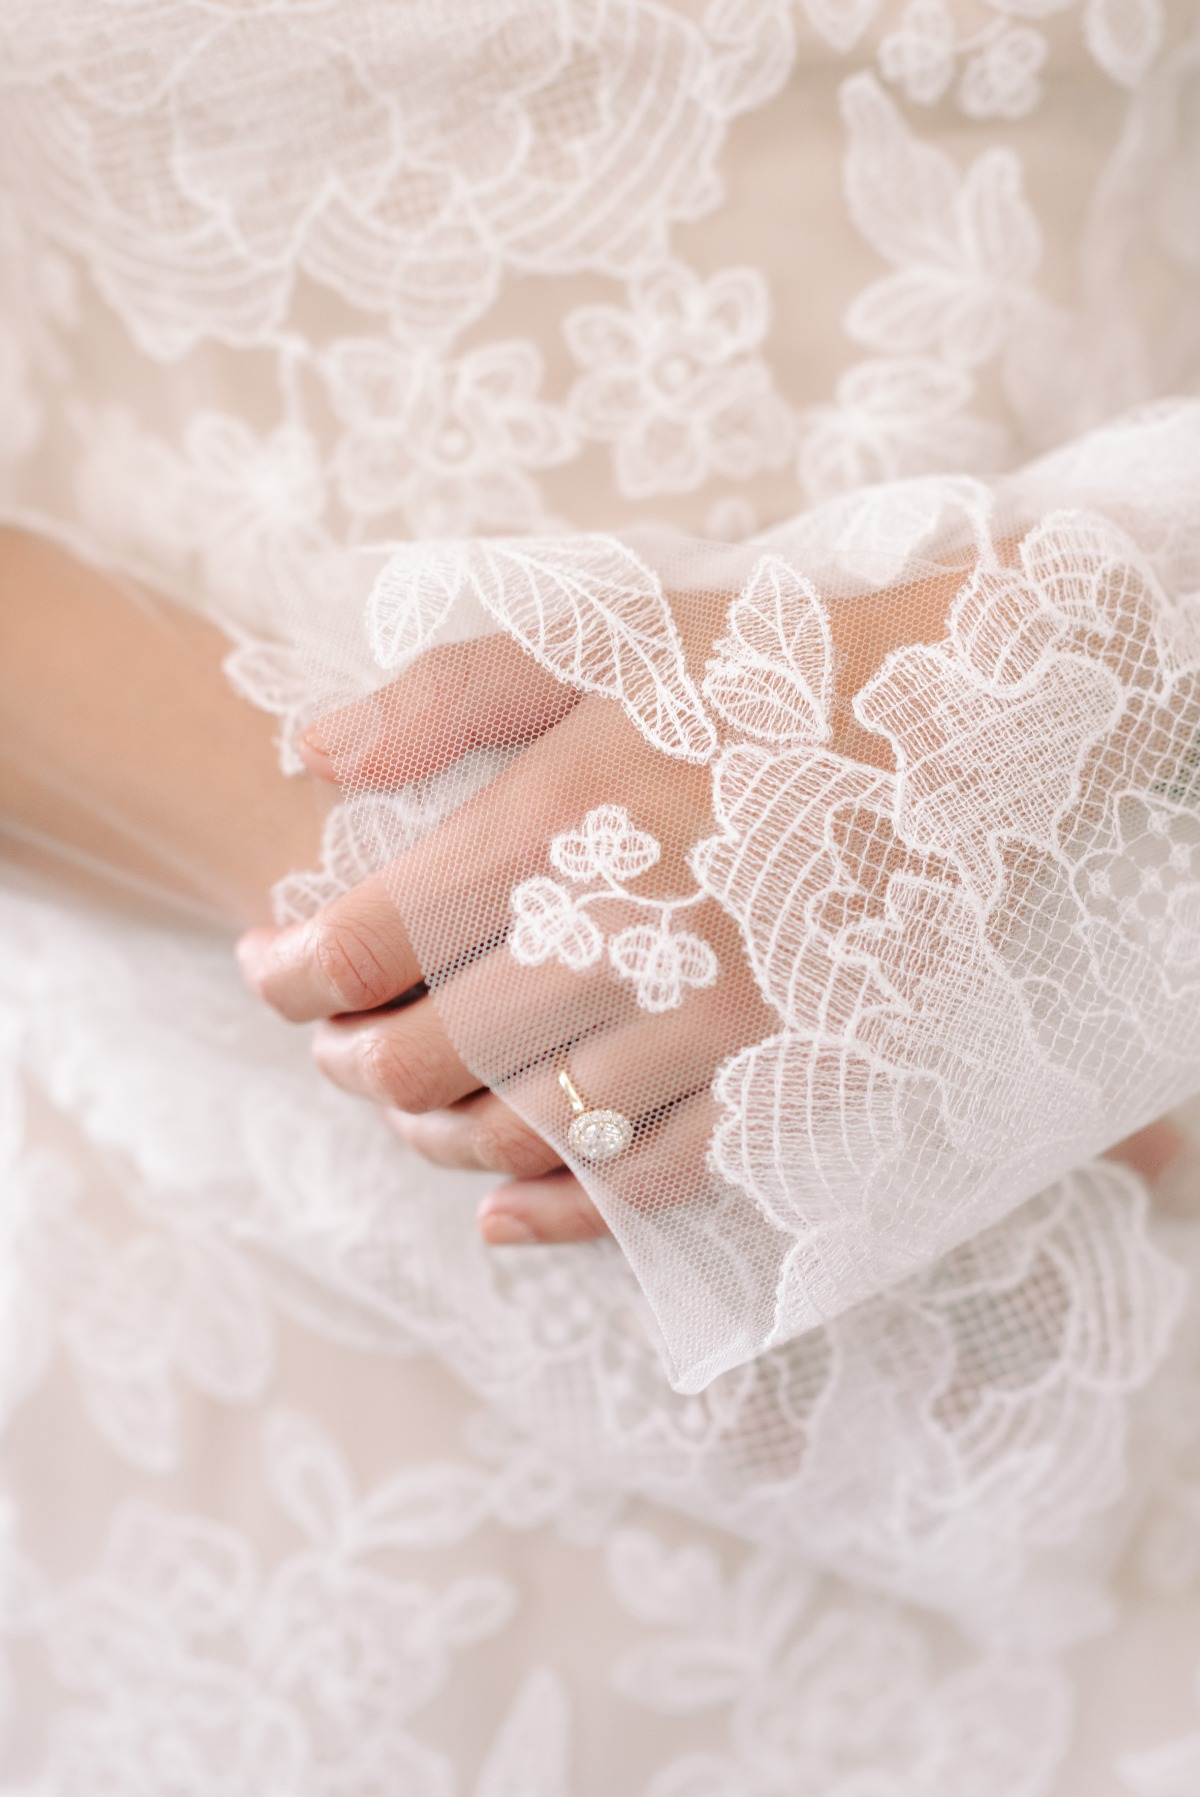 Vera Wang lace wedding dress